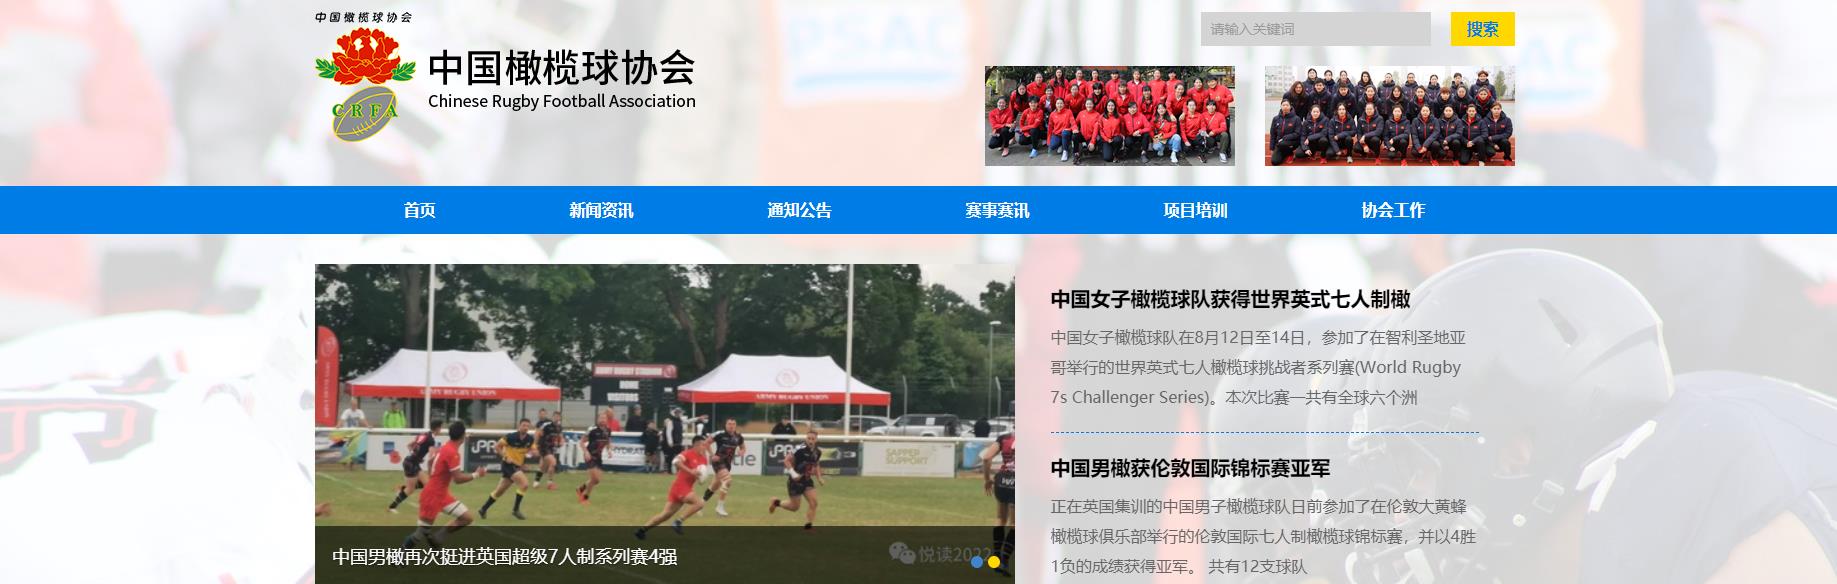 中国橄榄球协会官网